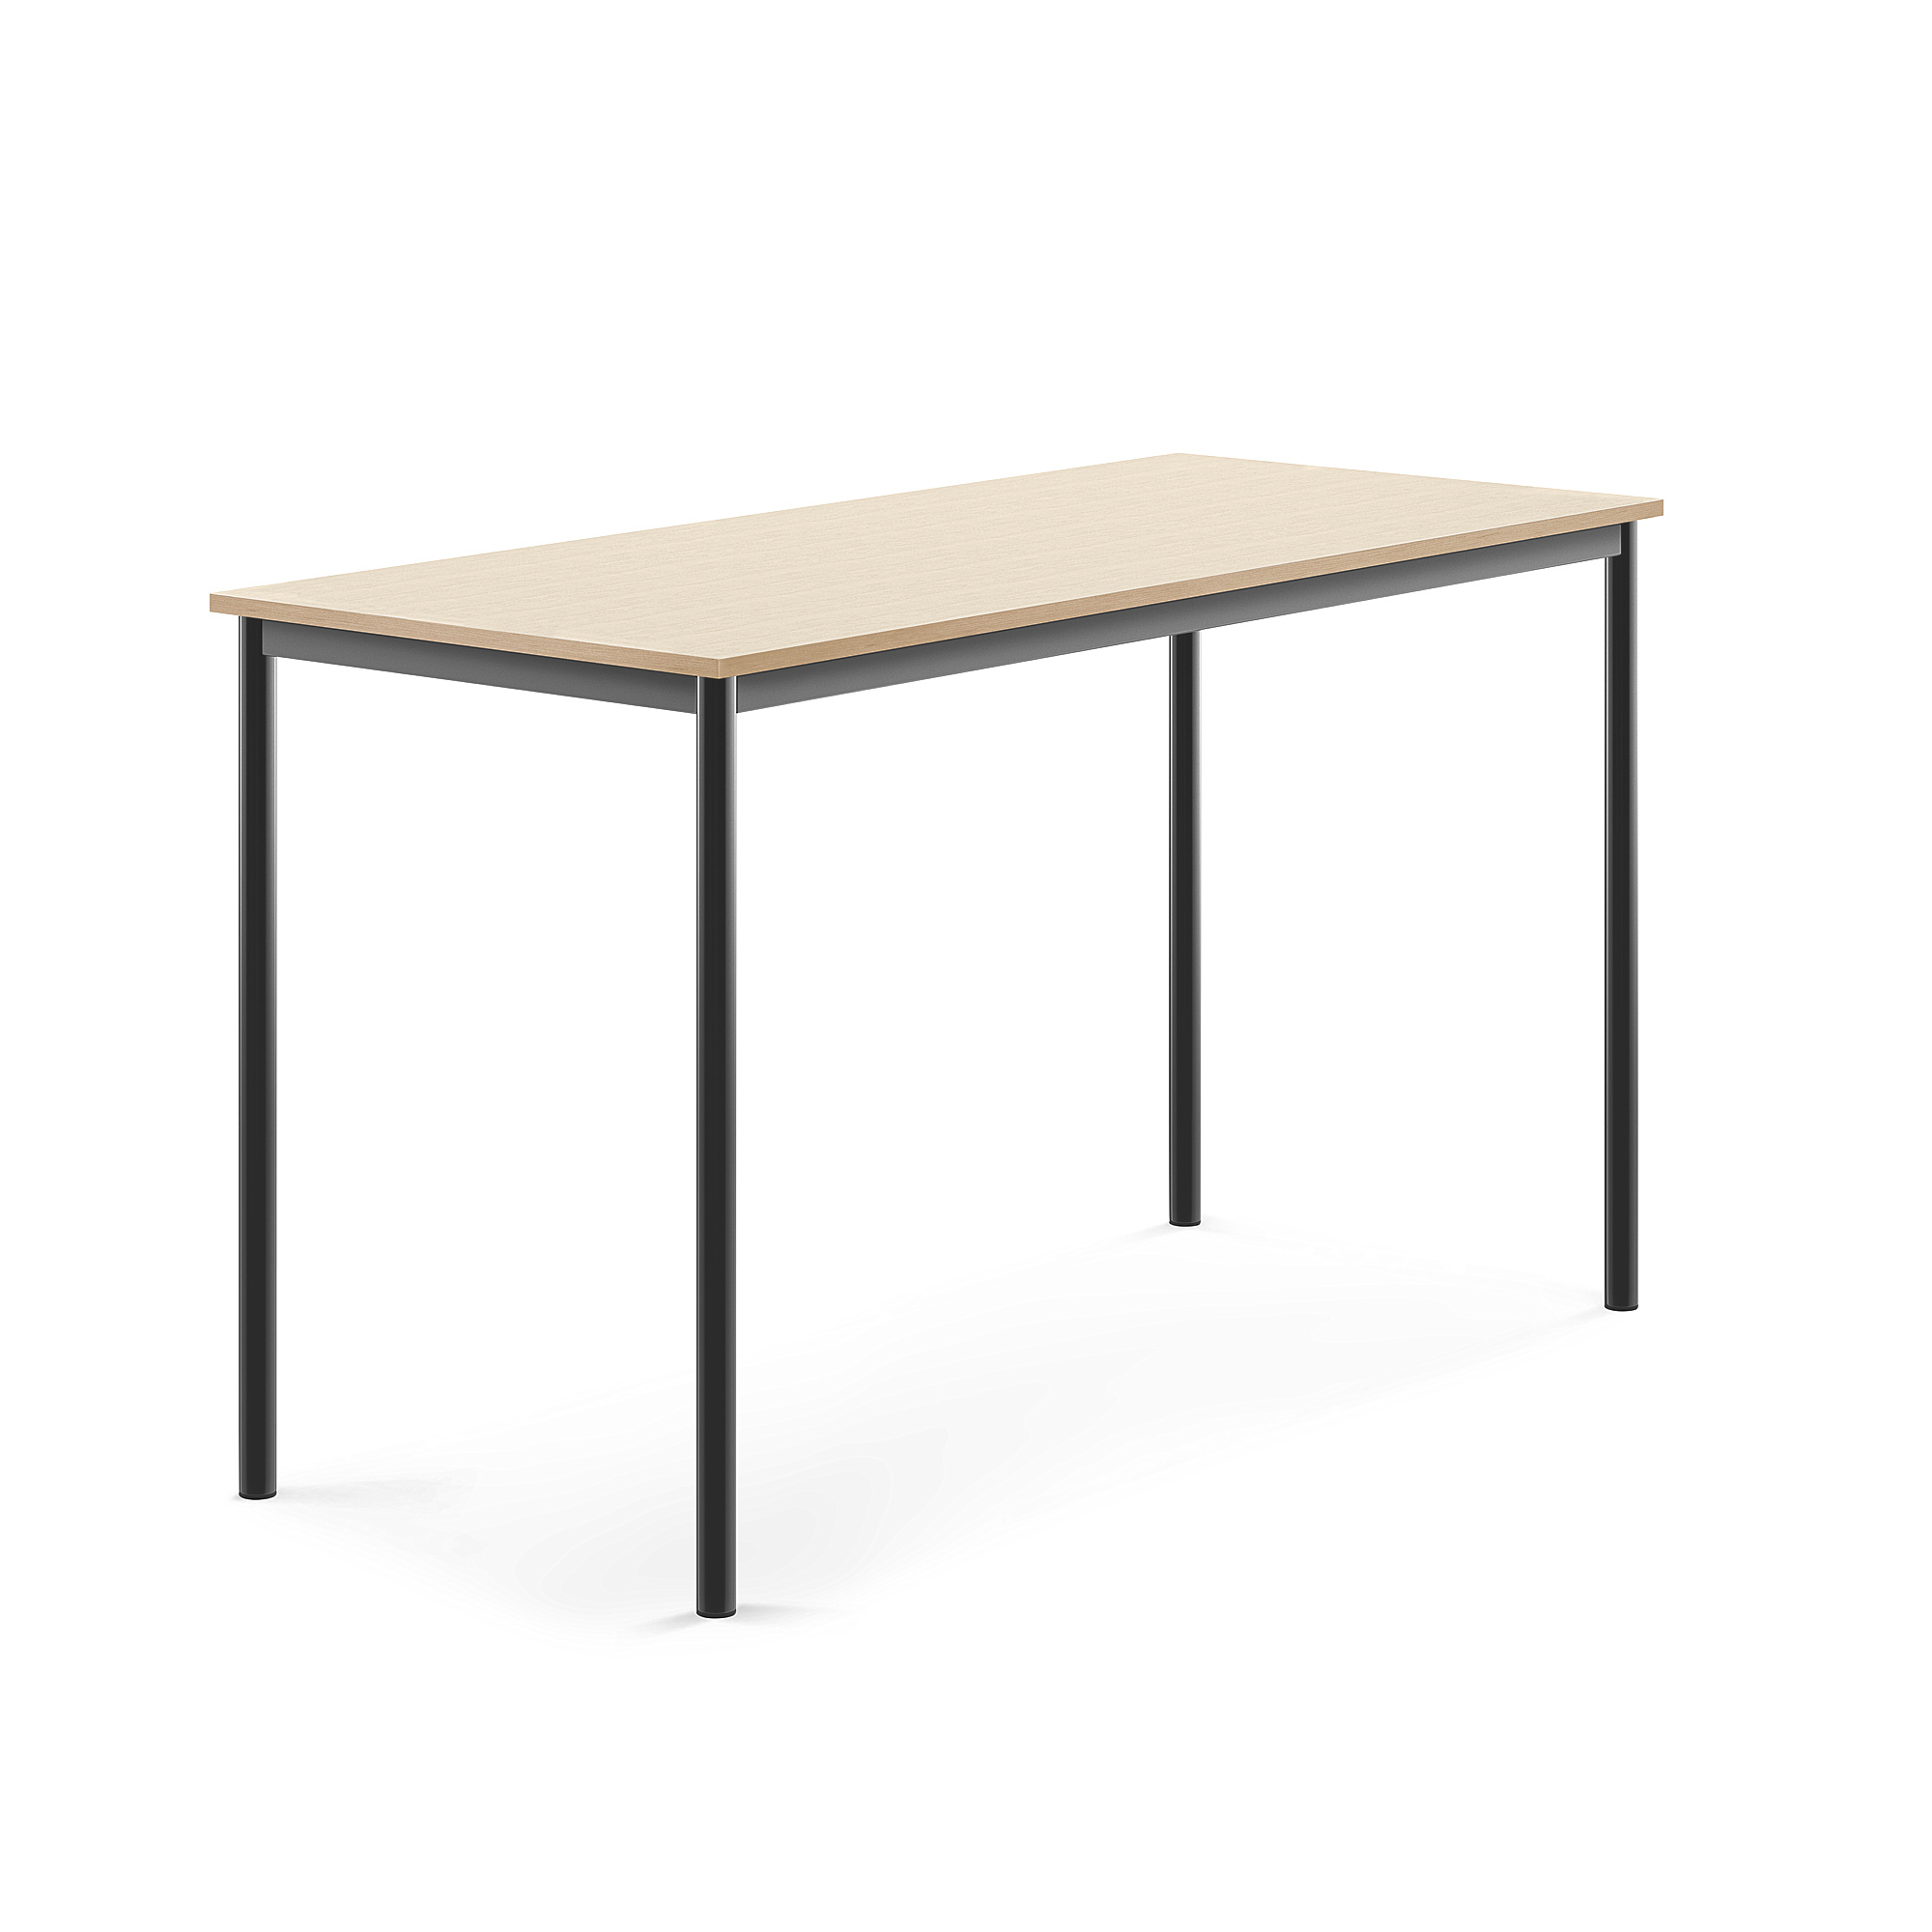 Stůl SONITUS, 1600x700x900 mm, antracitově šedé nohy, HPL deska tlumící hluk, bříza